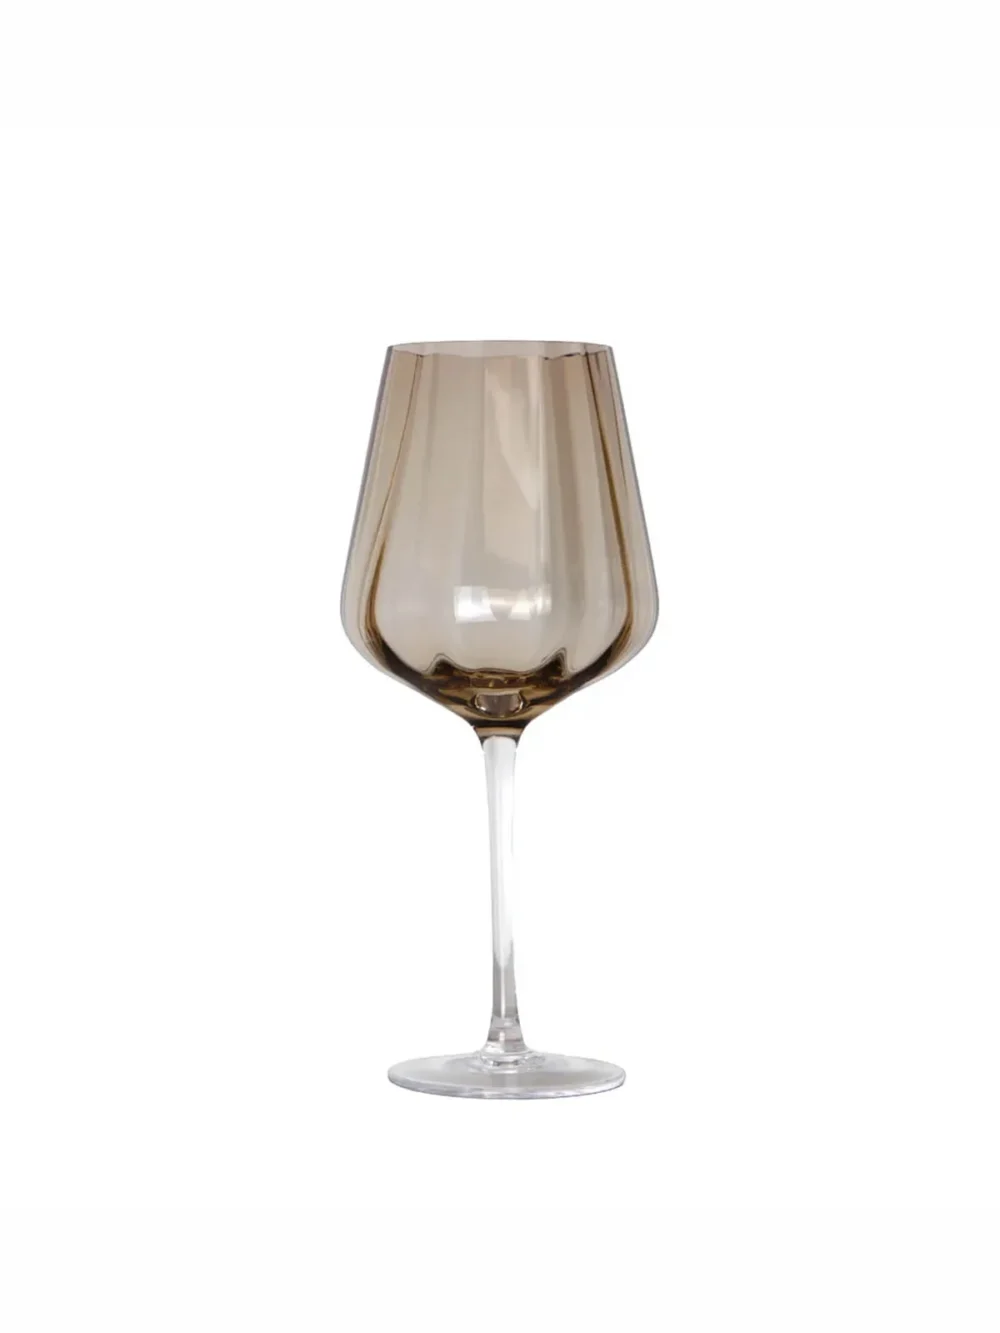 vinglas i topaz, meadow, dansk design, vinglas, rødvinsglas, hvidvinsglas, specktrum, remix by sofie, mundblæst glas, borddækning, tableware